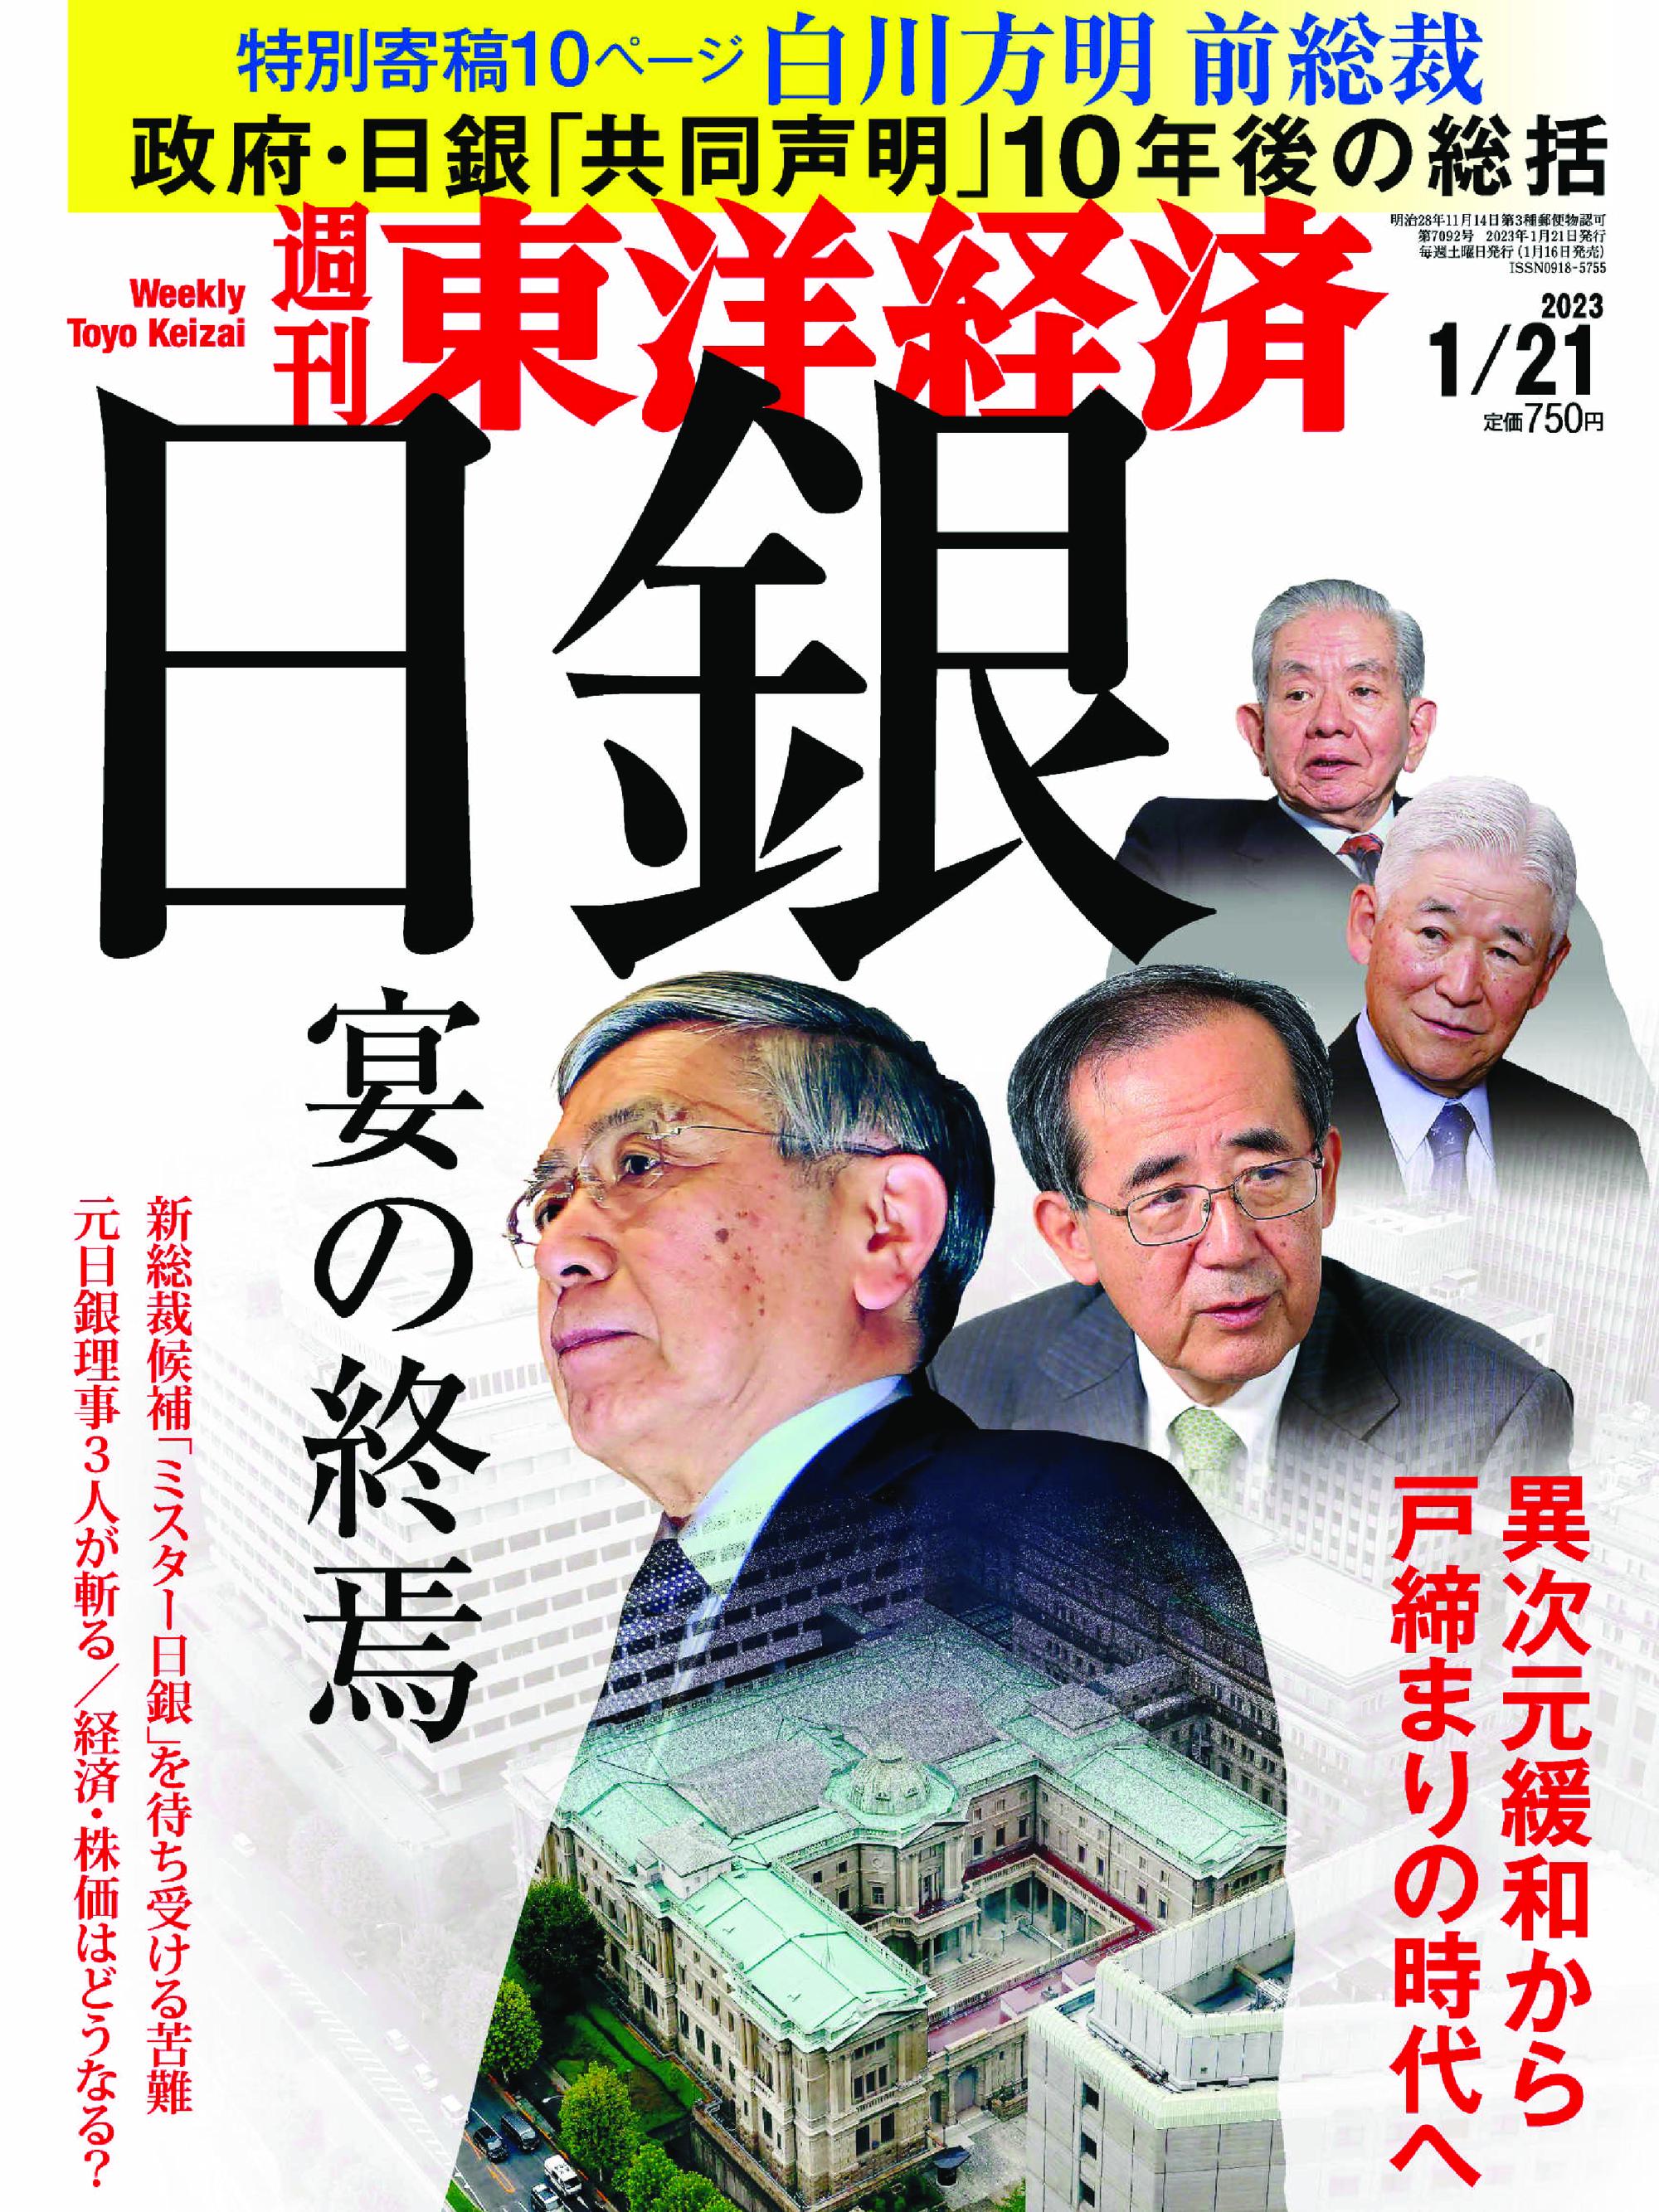 Weekly Toyo Keizai 週刊東洋経済 2023年1月16日 